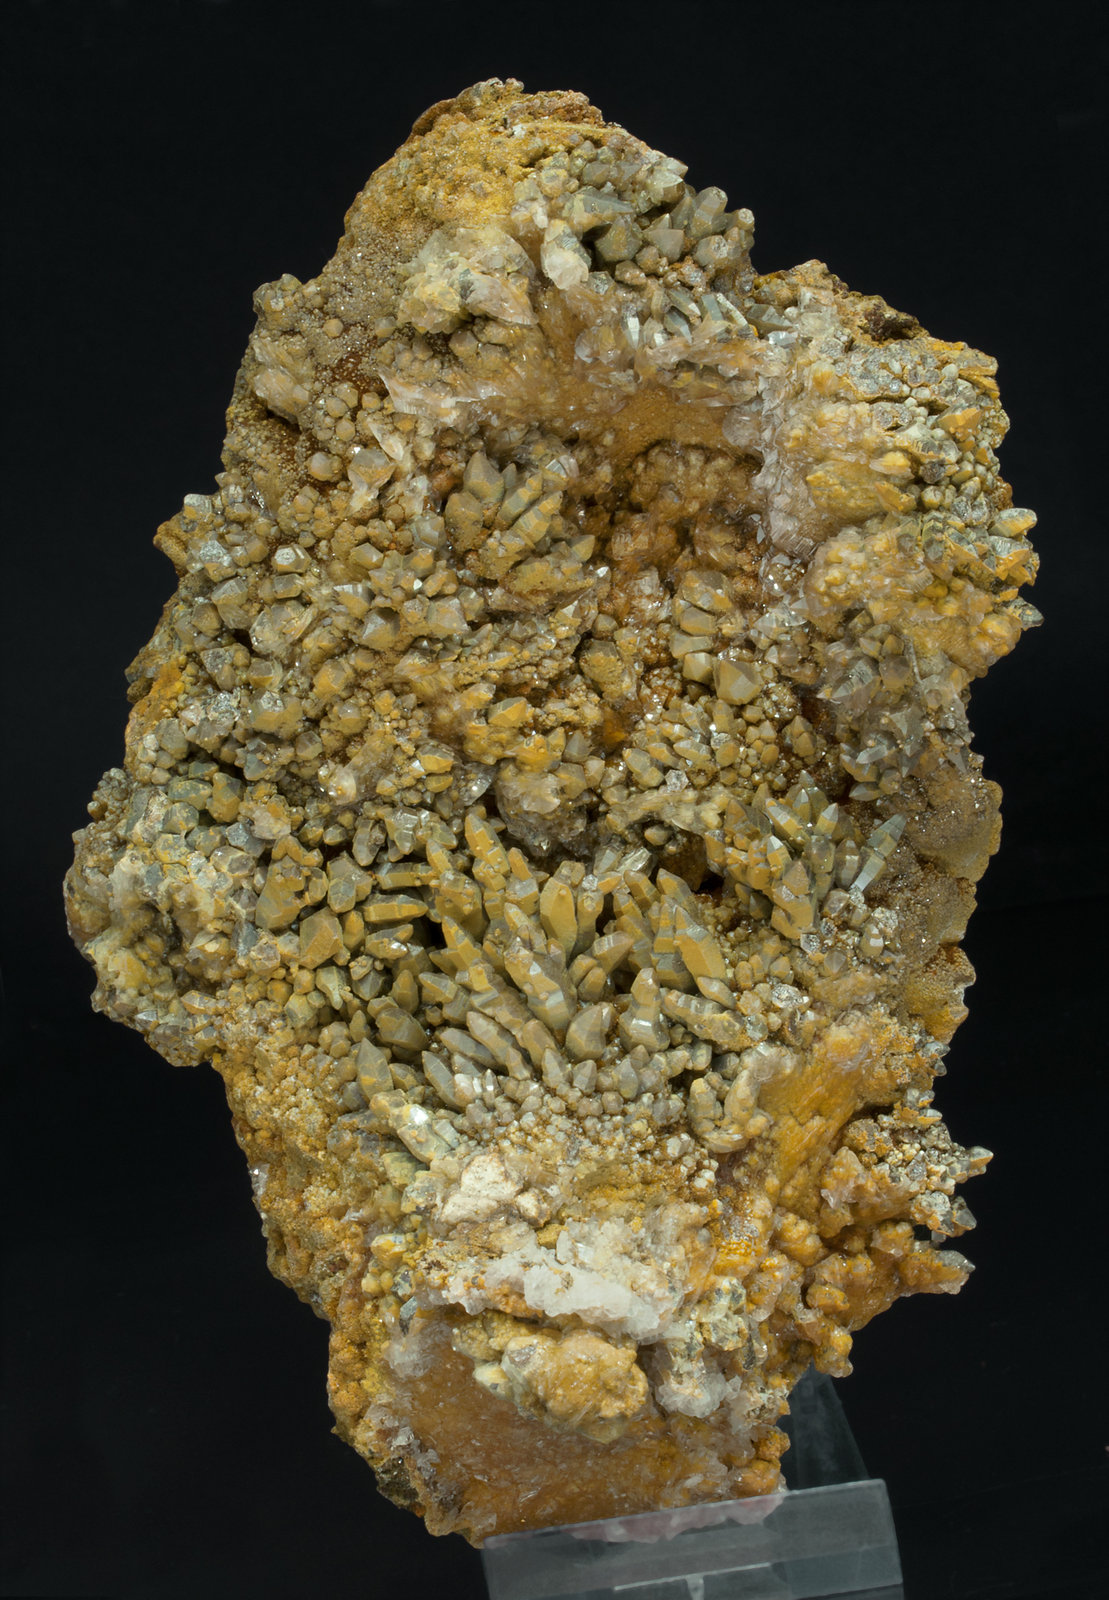 specimens/s_imagesY0/Vanadinite-TM52Y0f.jpg